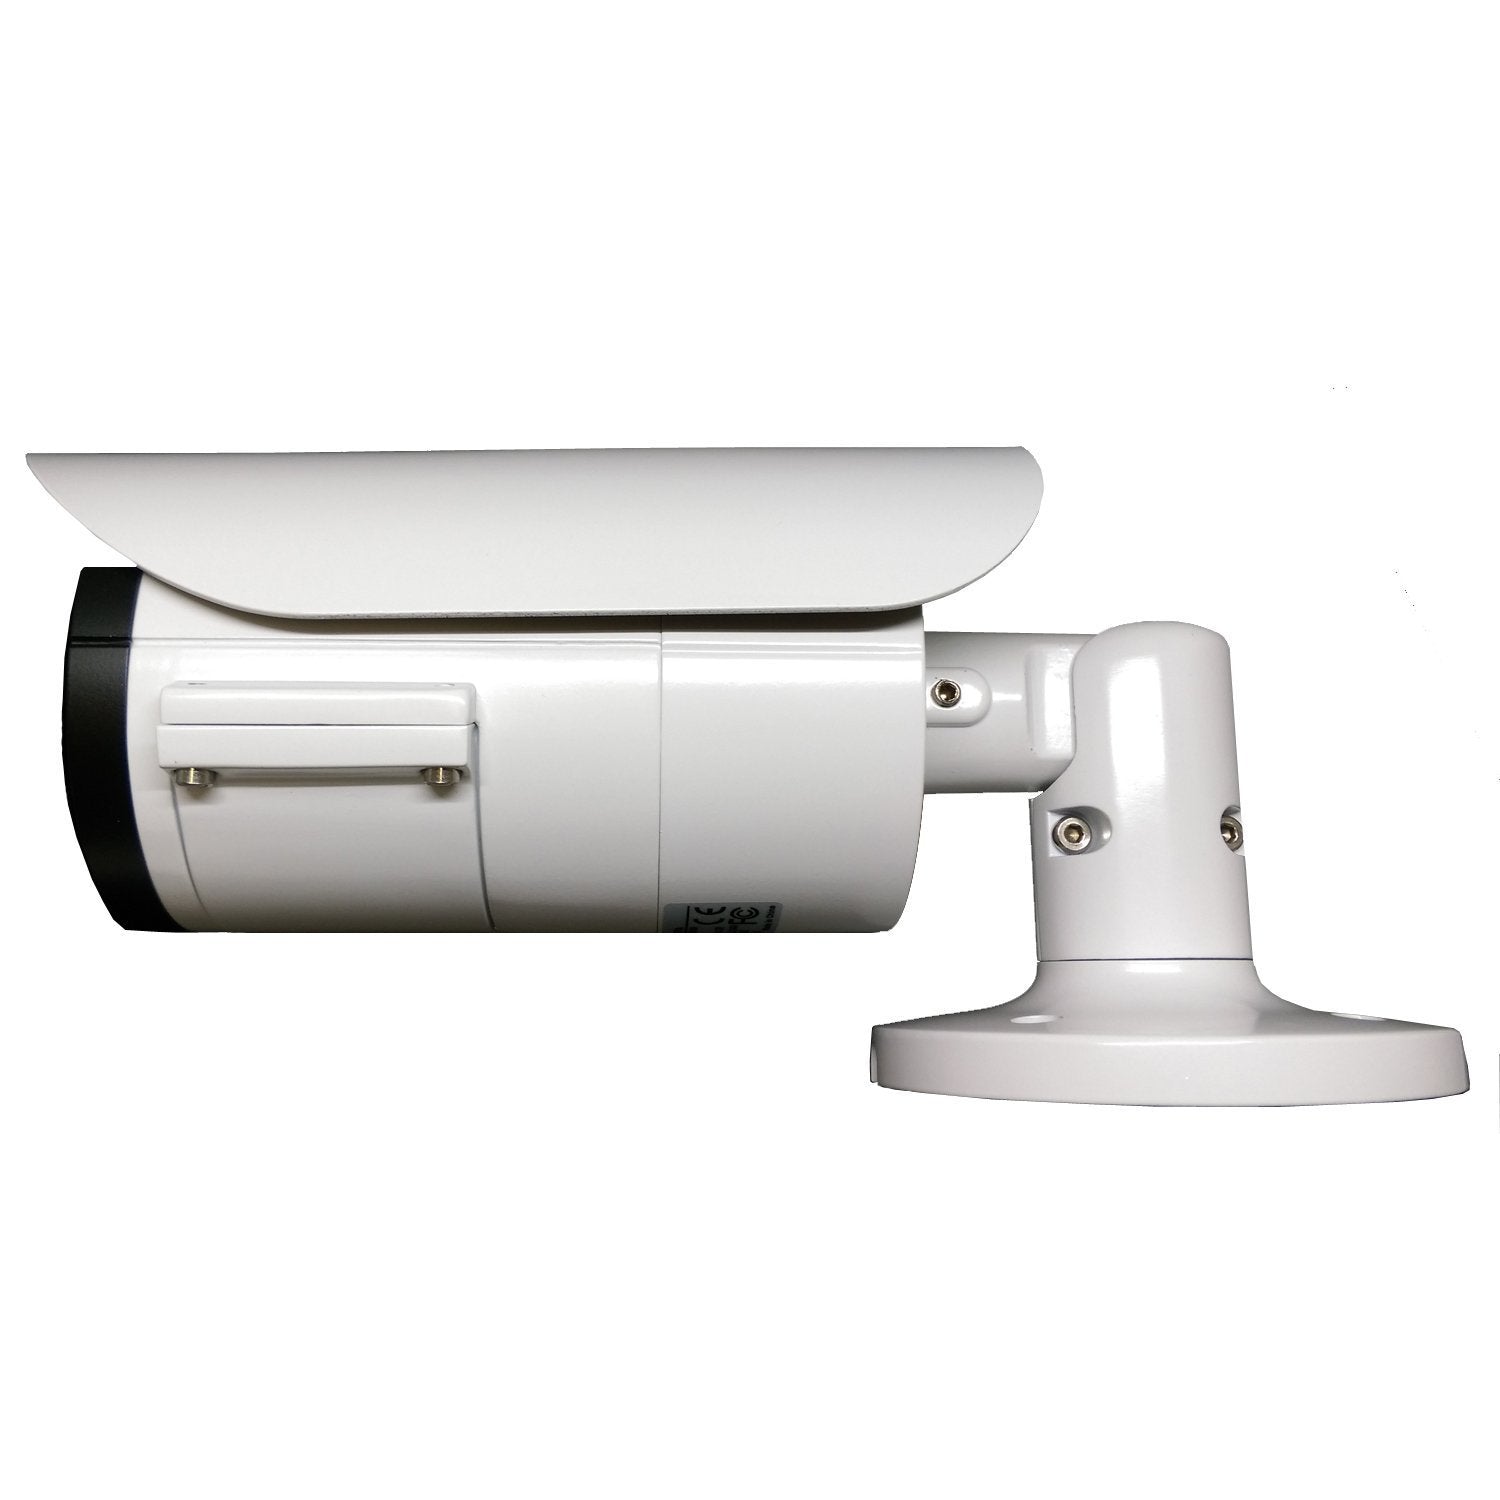 [VBT2-2812DRW] APPRO 2.8-12mm Varifocal Lens Bullet Outdoor Surveillance  Camera, 1080P Full HD, 2.1MP 4in1 (TVI/AHD/CVI/CVBS), Smart IR Tech, Analog 